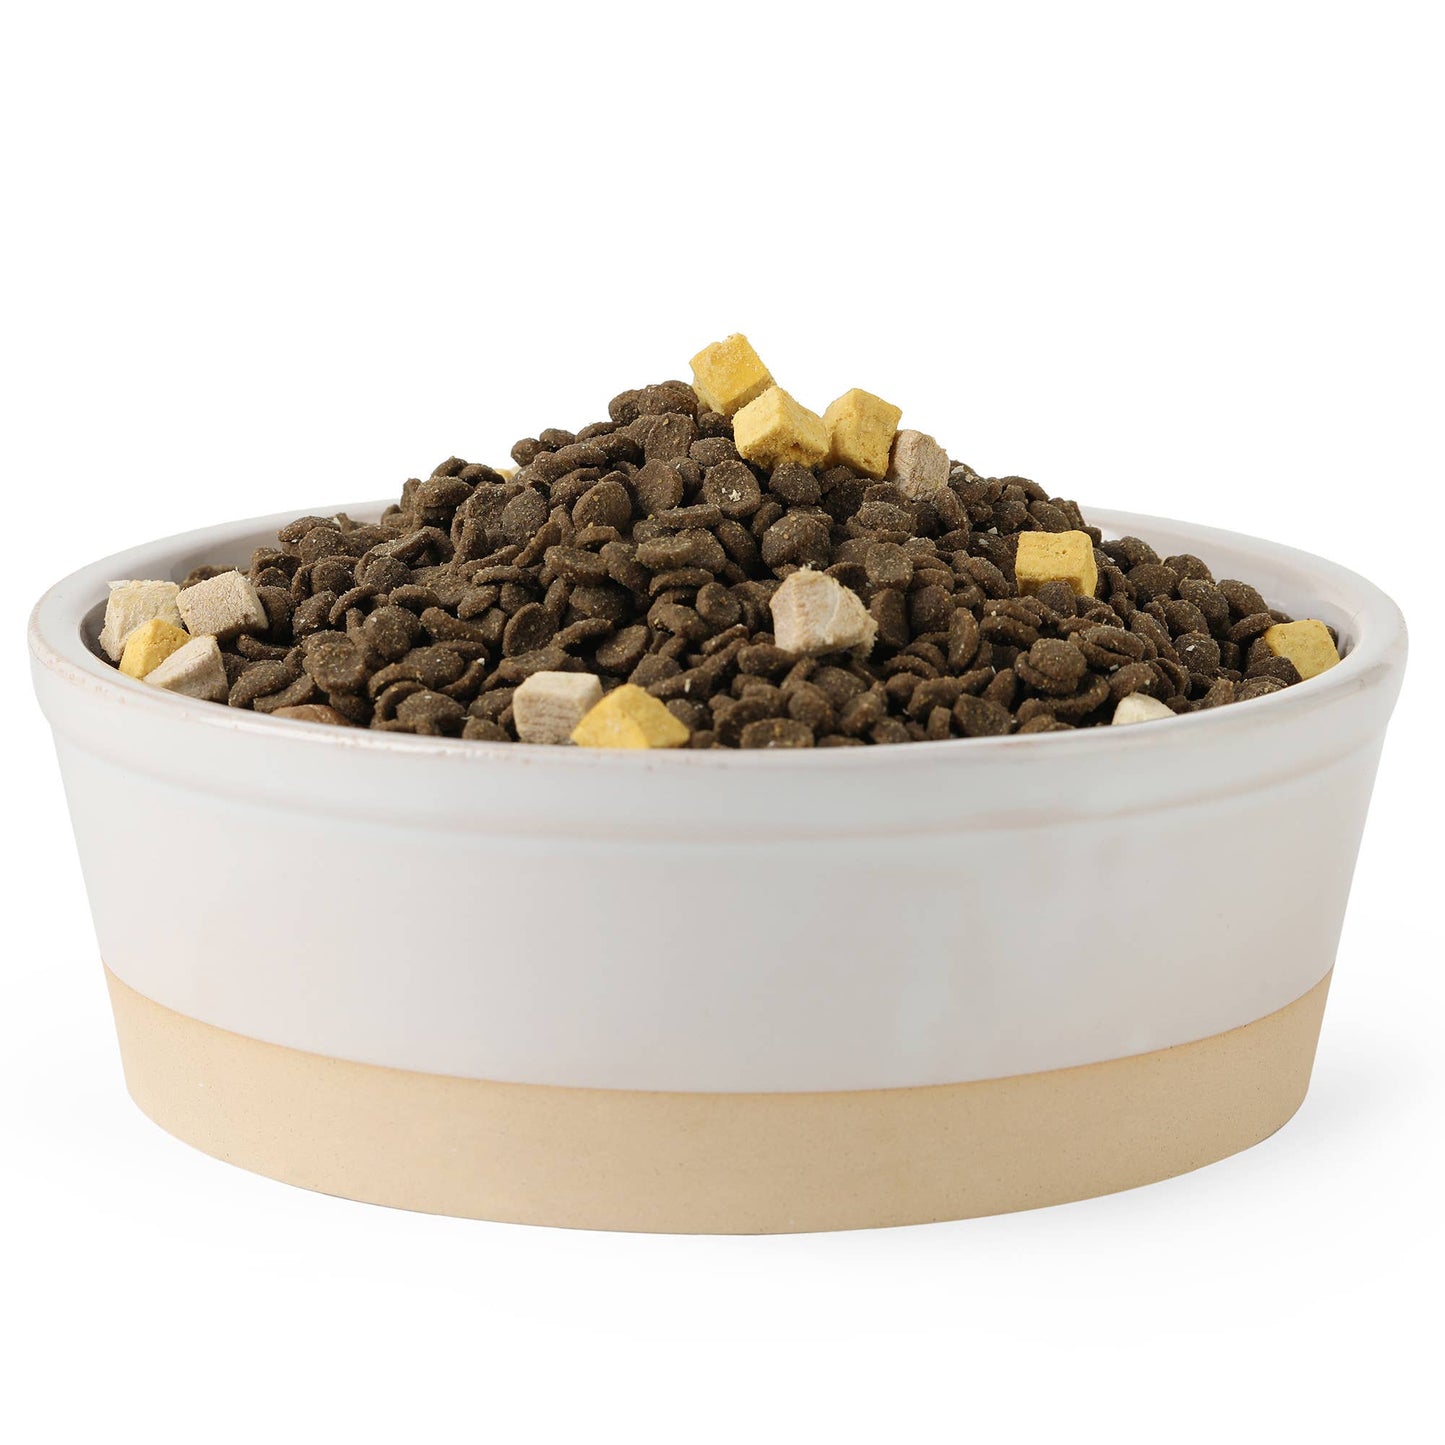 Nordic Cream Pet Bowl